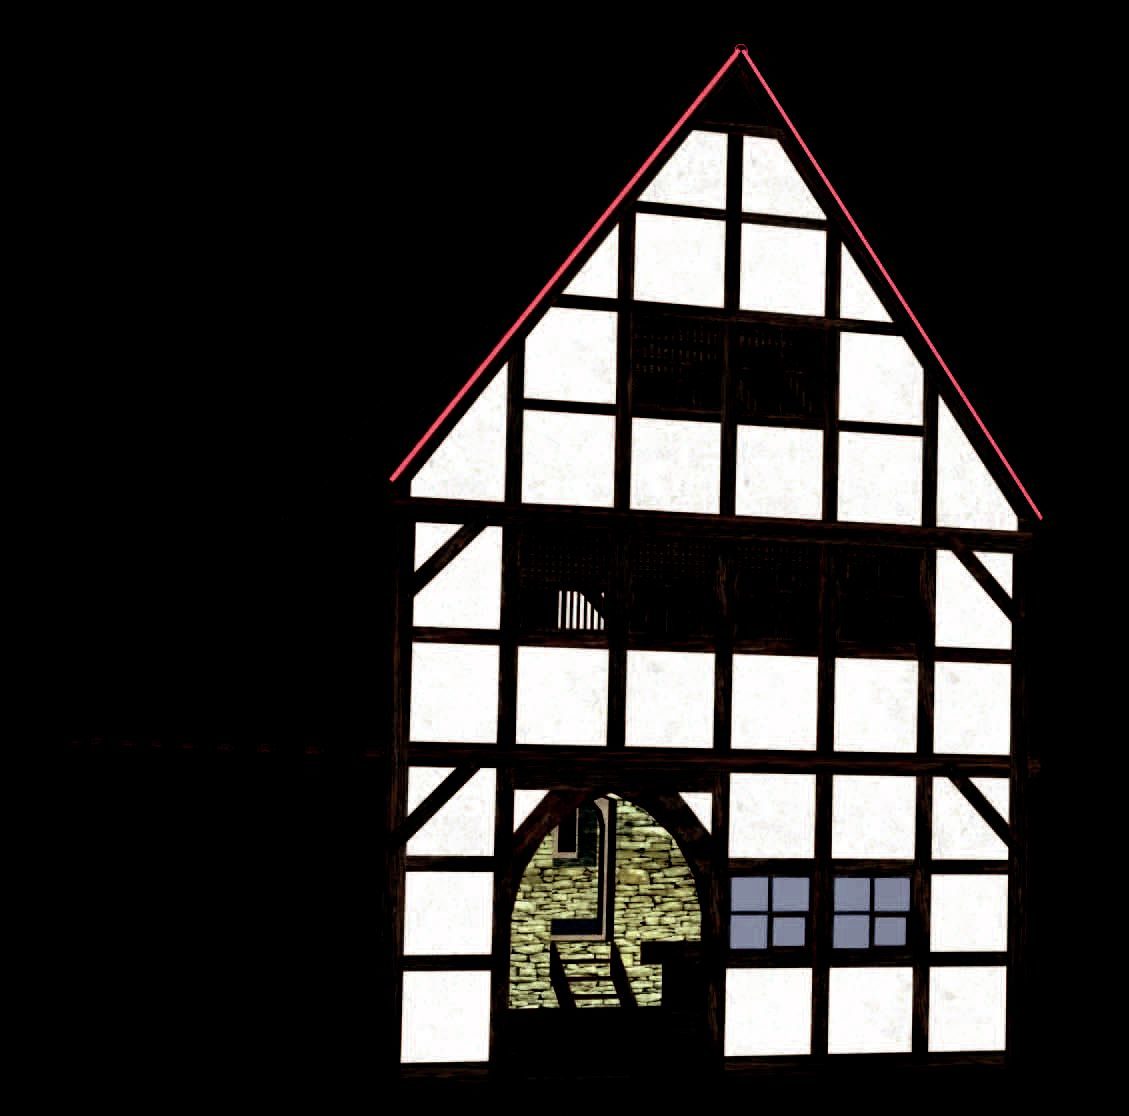 Braunschweig, Echternstraße 25, Rekonstruktionsversuch eines zweigeschossigen Giebelhauses aus dem späten 13. Jahrhundert nach den Grabungsbefunden. Über dem Keller ist ein massiv ummauerter Wohnraum, eine Steinkammer, rekonstruiert. (Zoom on click)